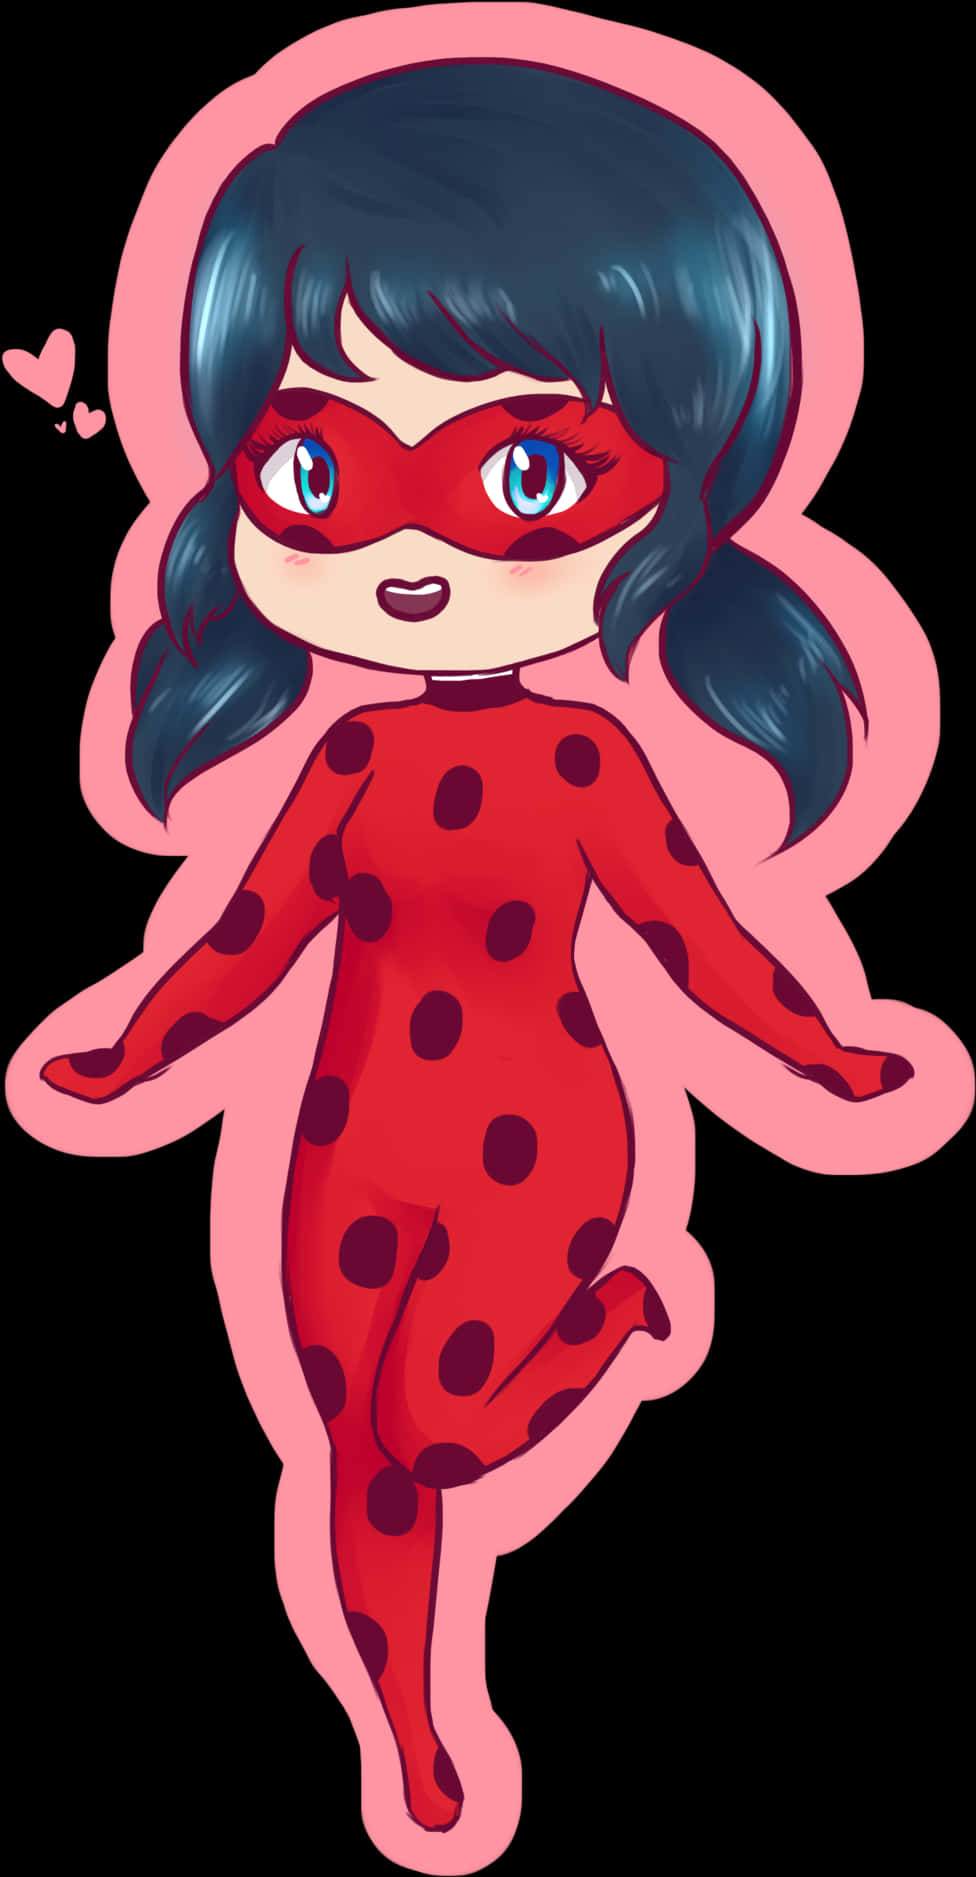 Animated Ladybug Character